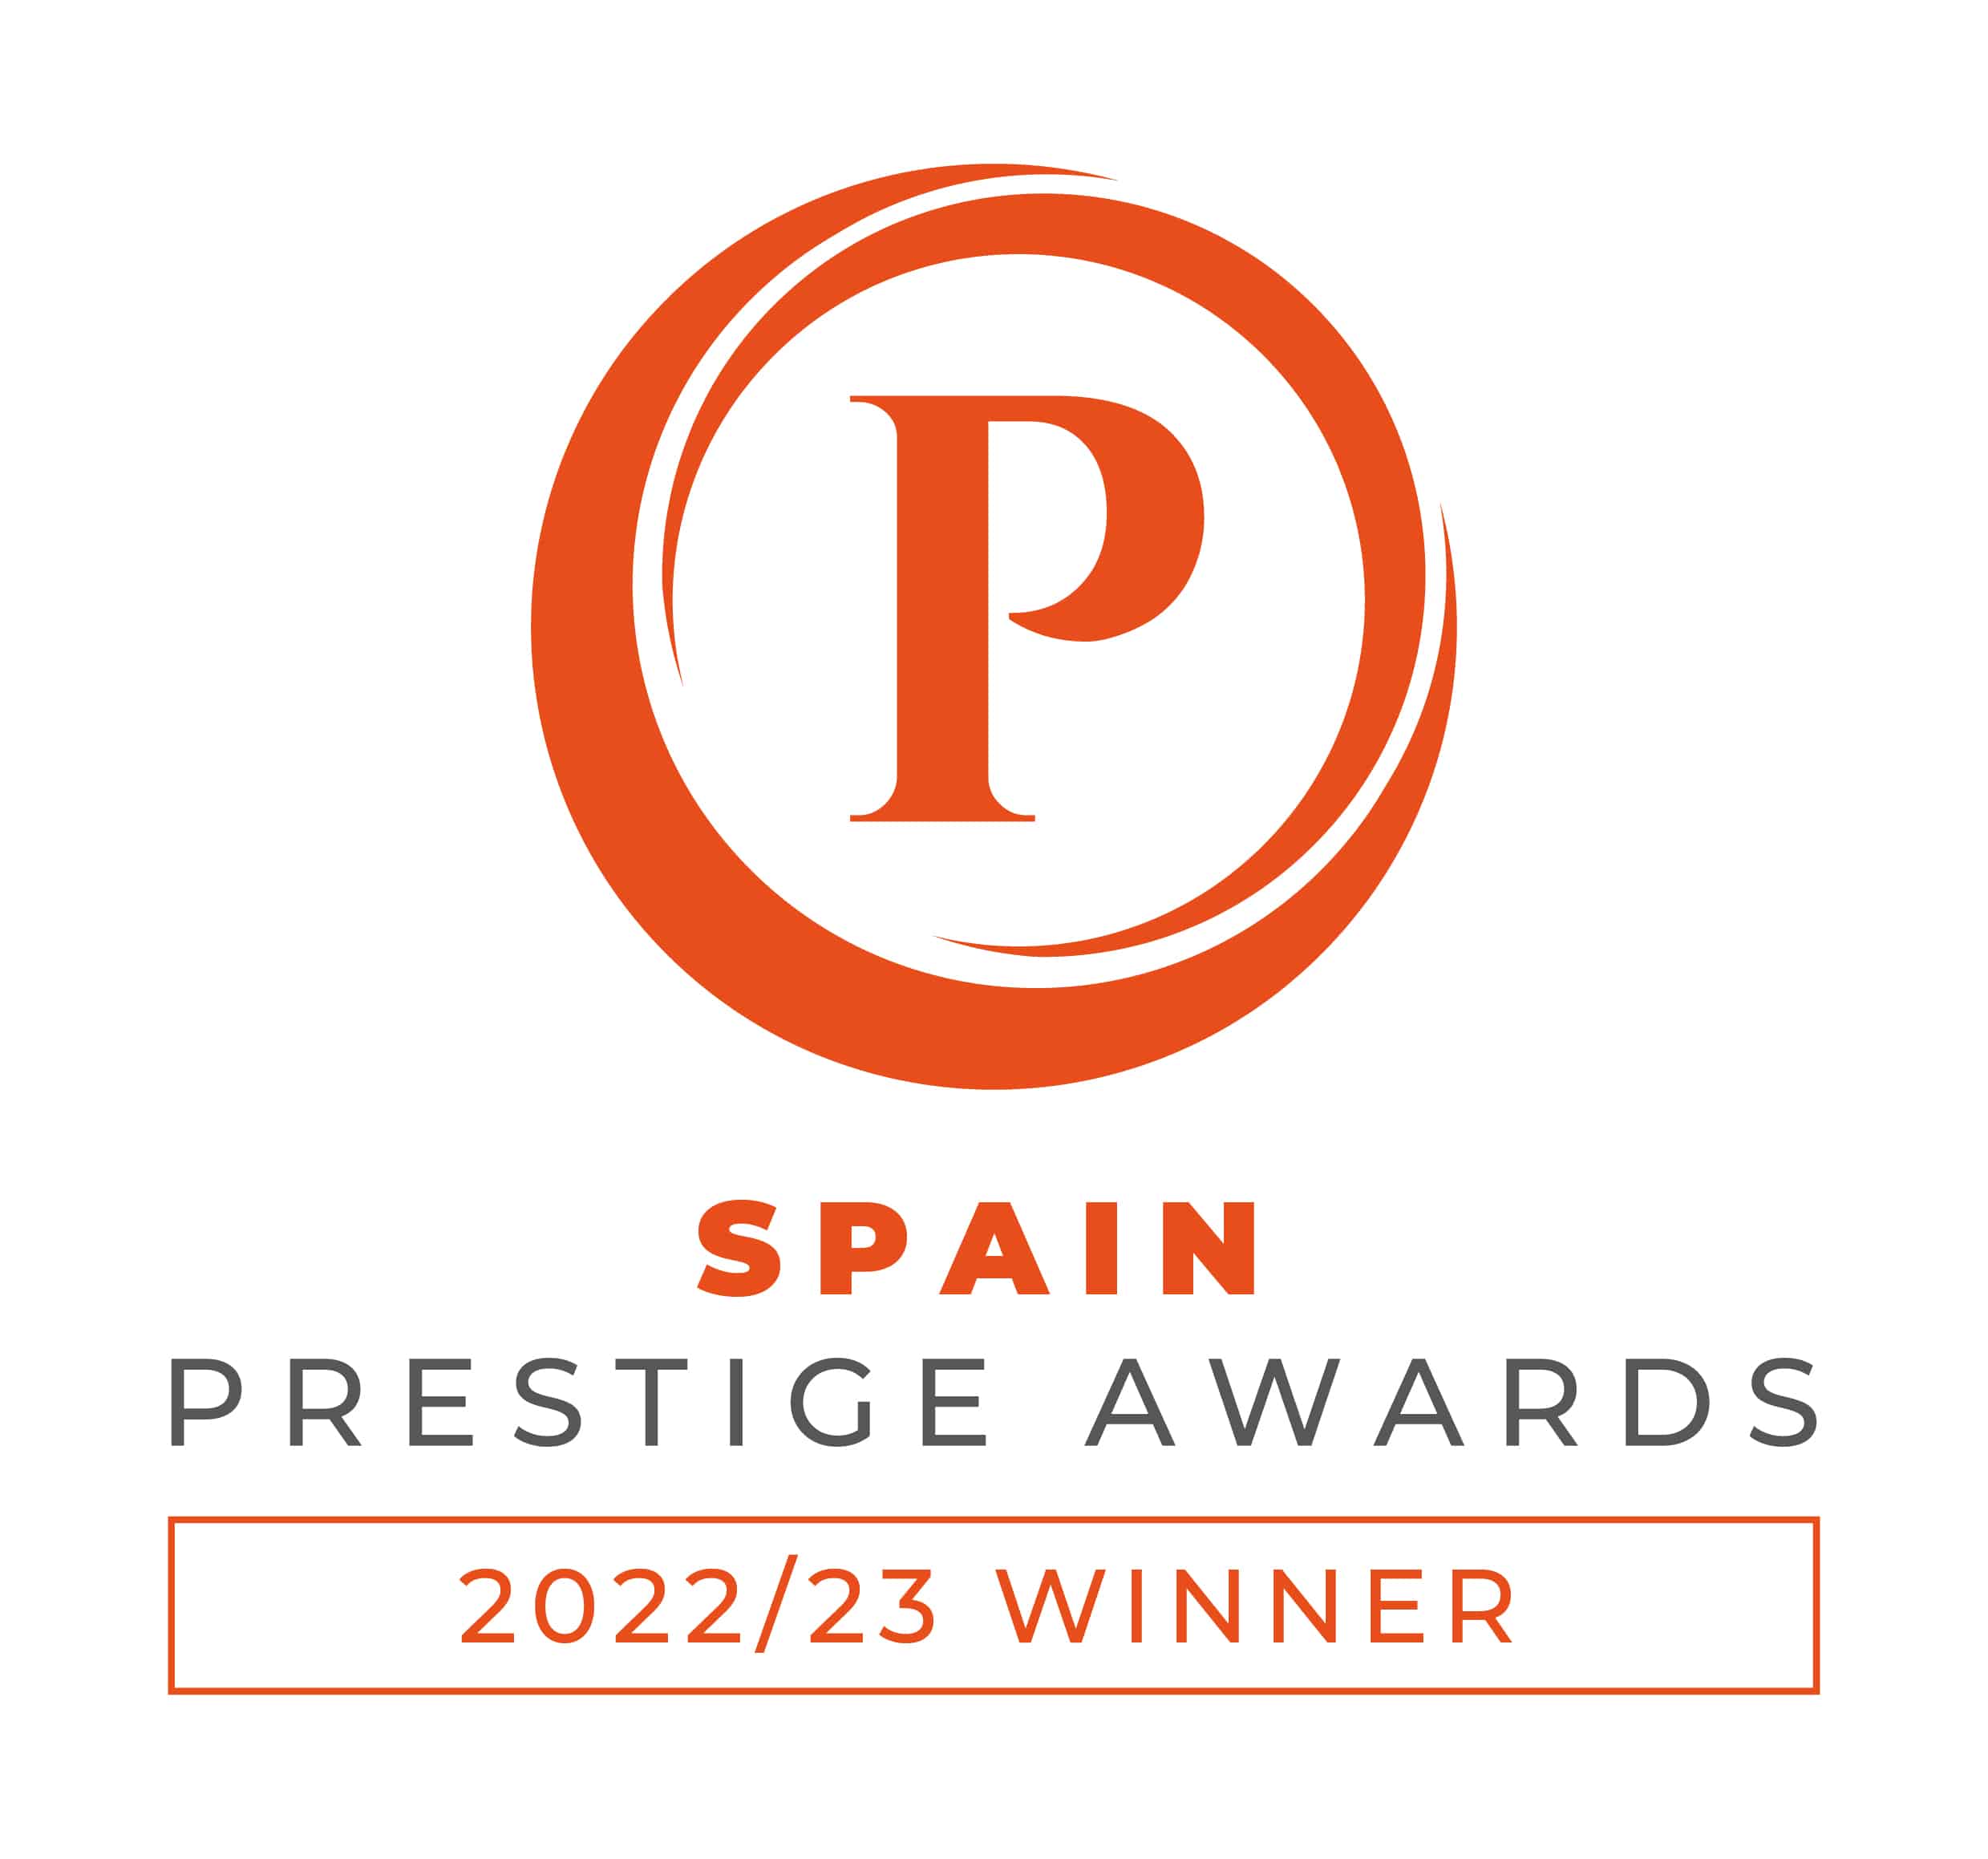 Spain Prestige Awards Winner 2022/23